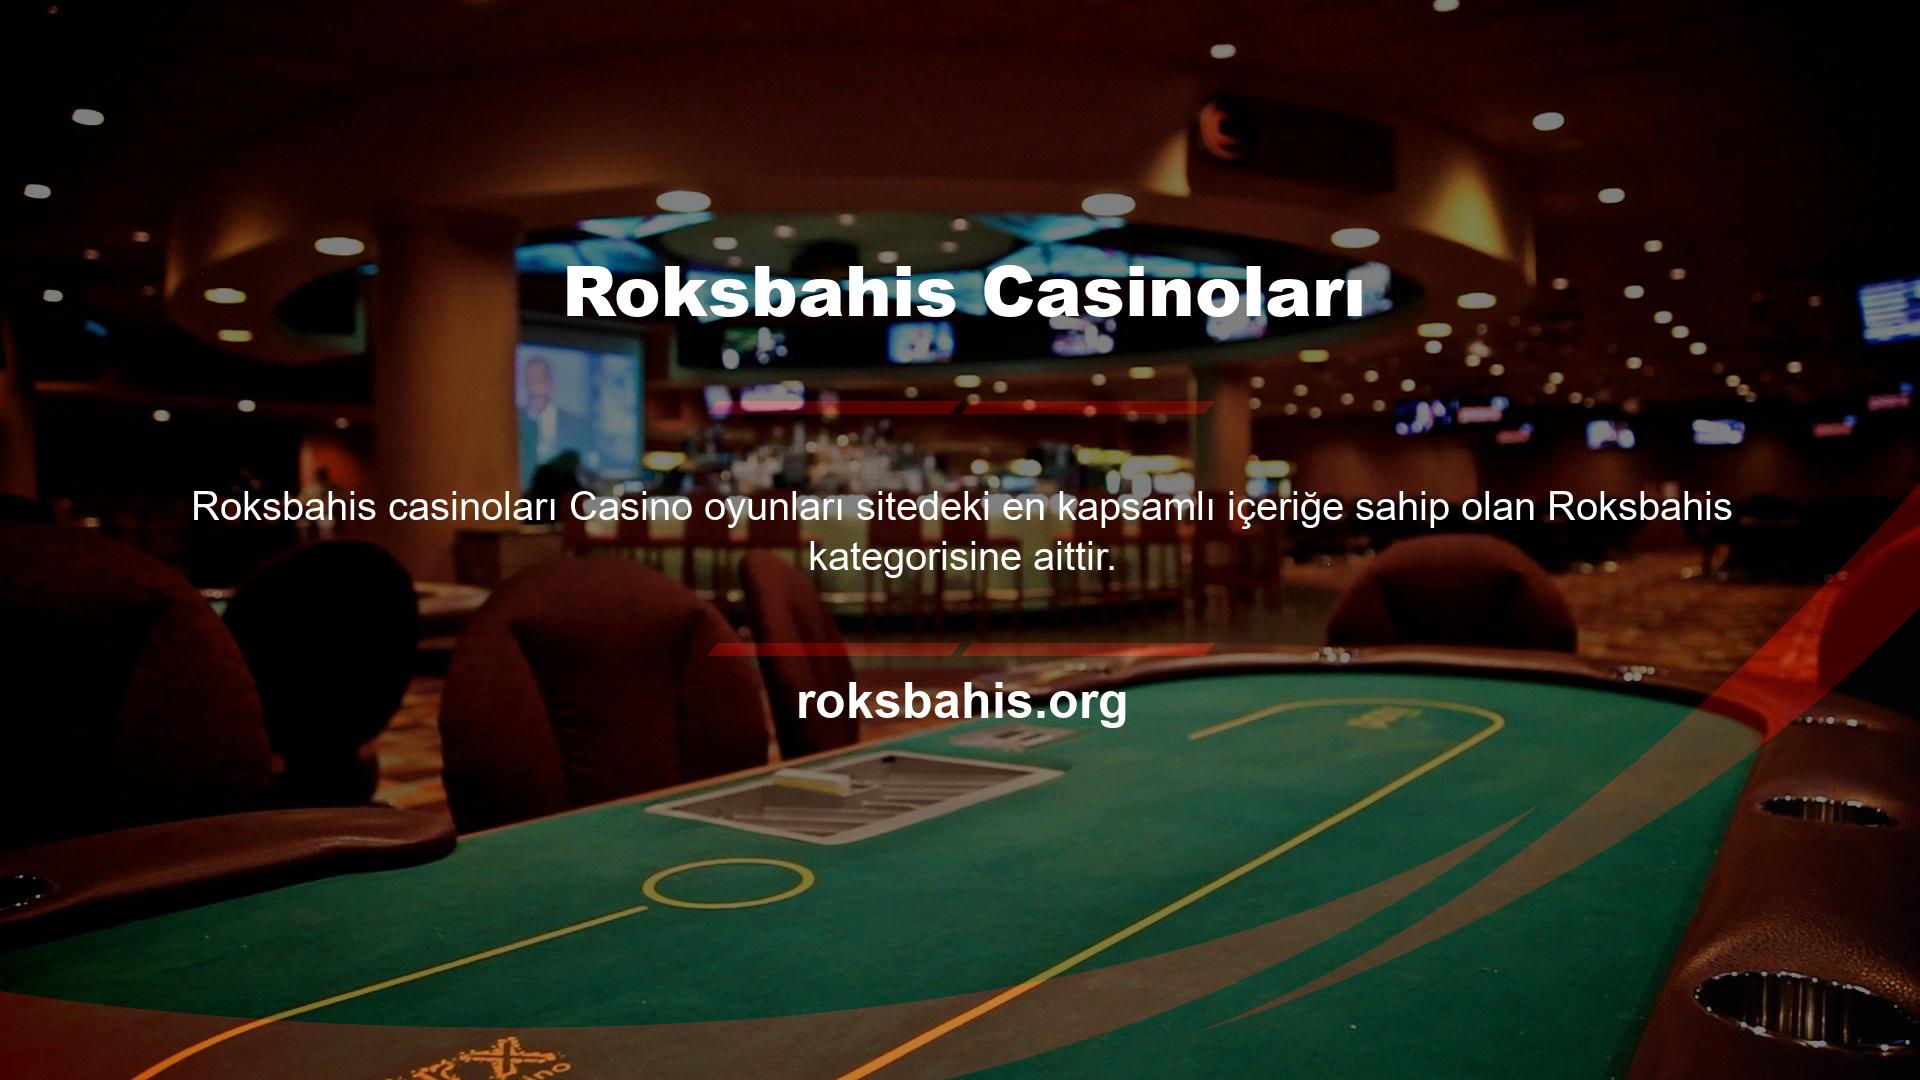 Site, casino kategorisinde daha fazla oyun seçeneği sunmakta ve aynı zamanda oyunlarını ücretsiz olarak oynamanıza izin vermektedir